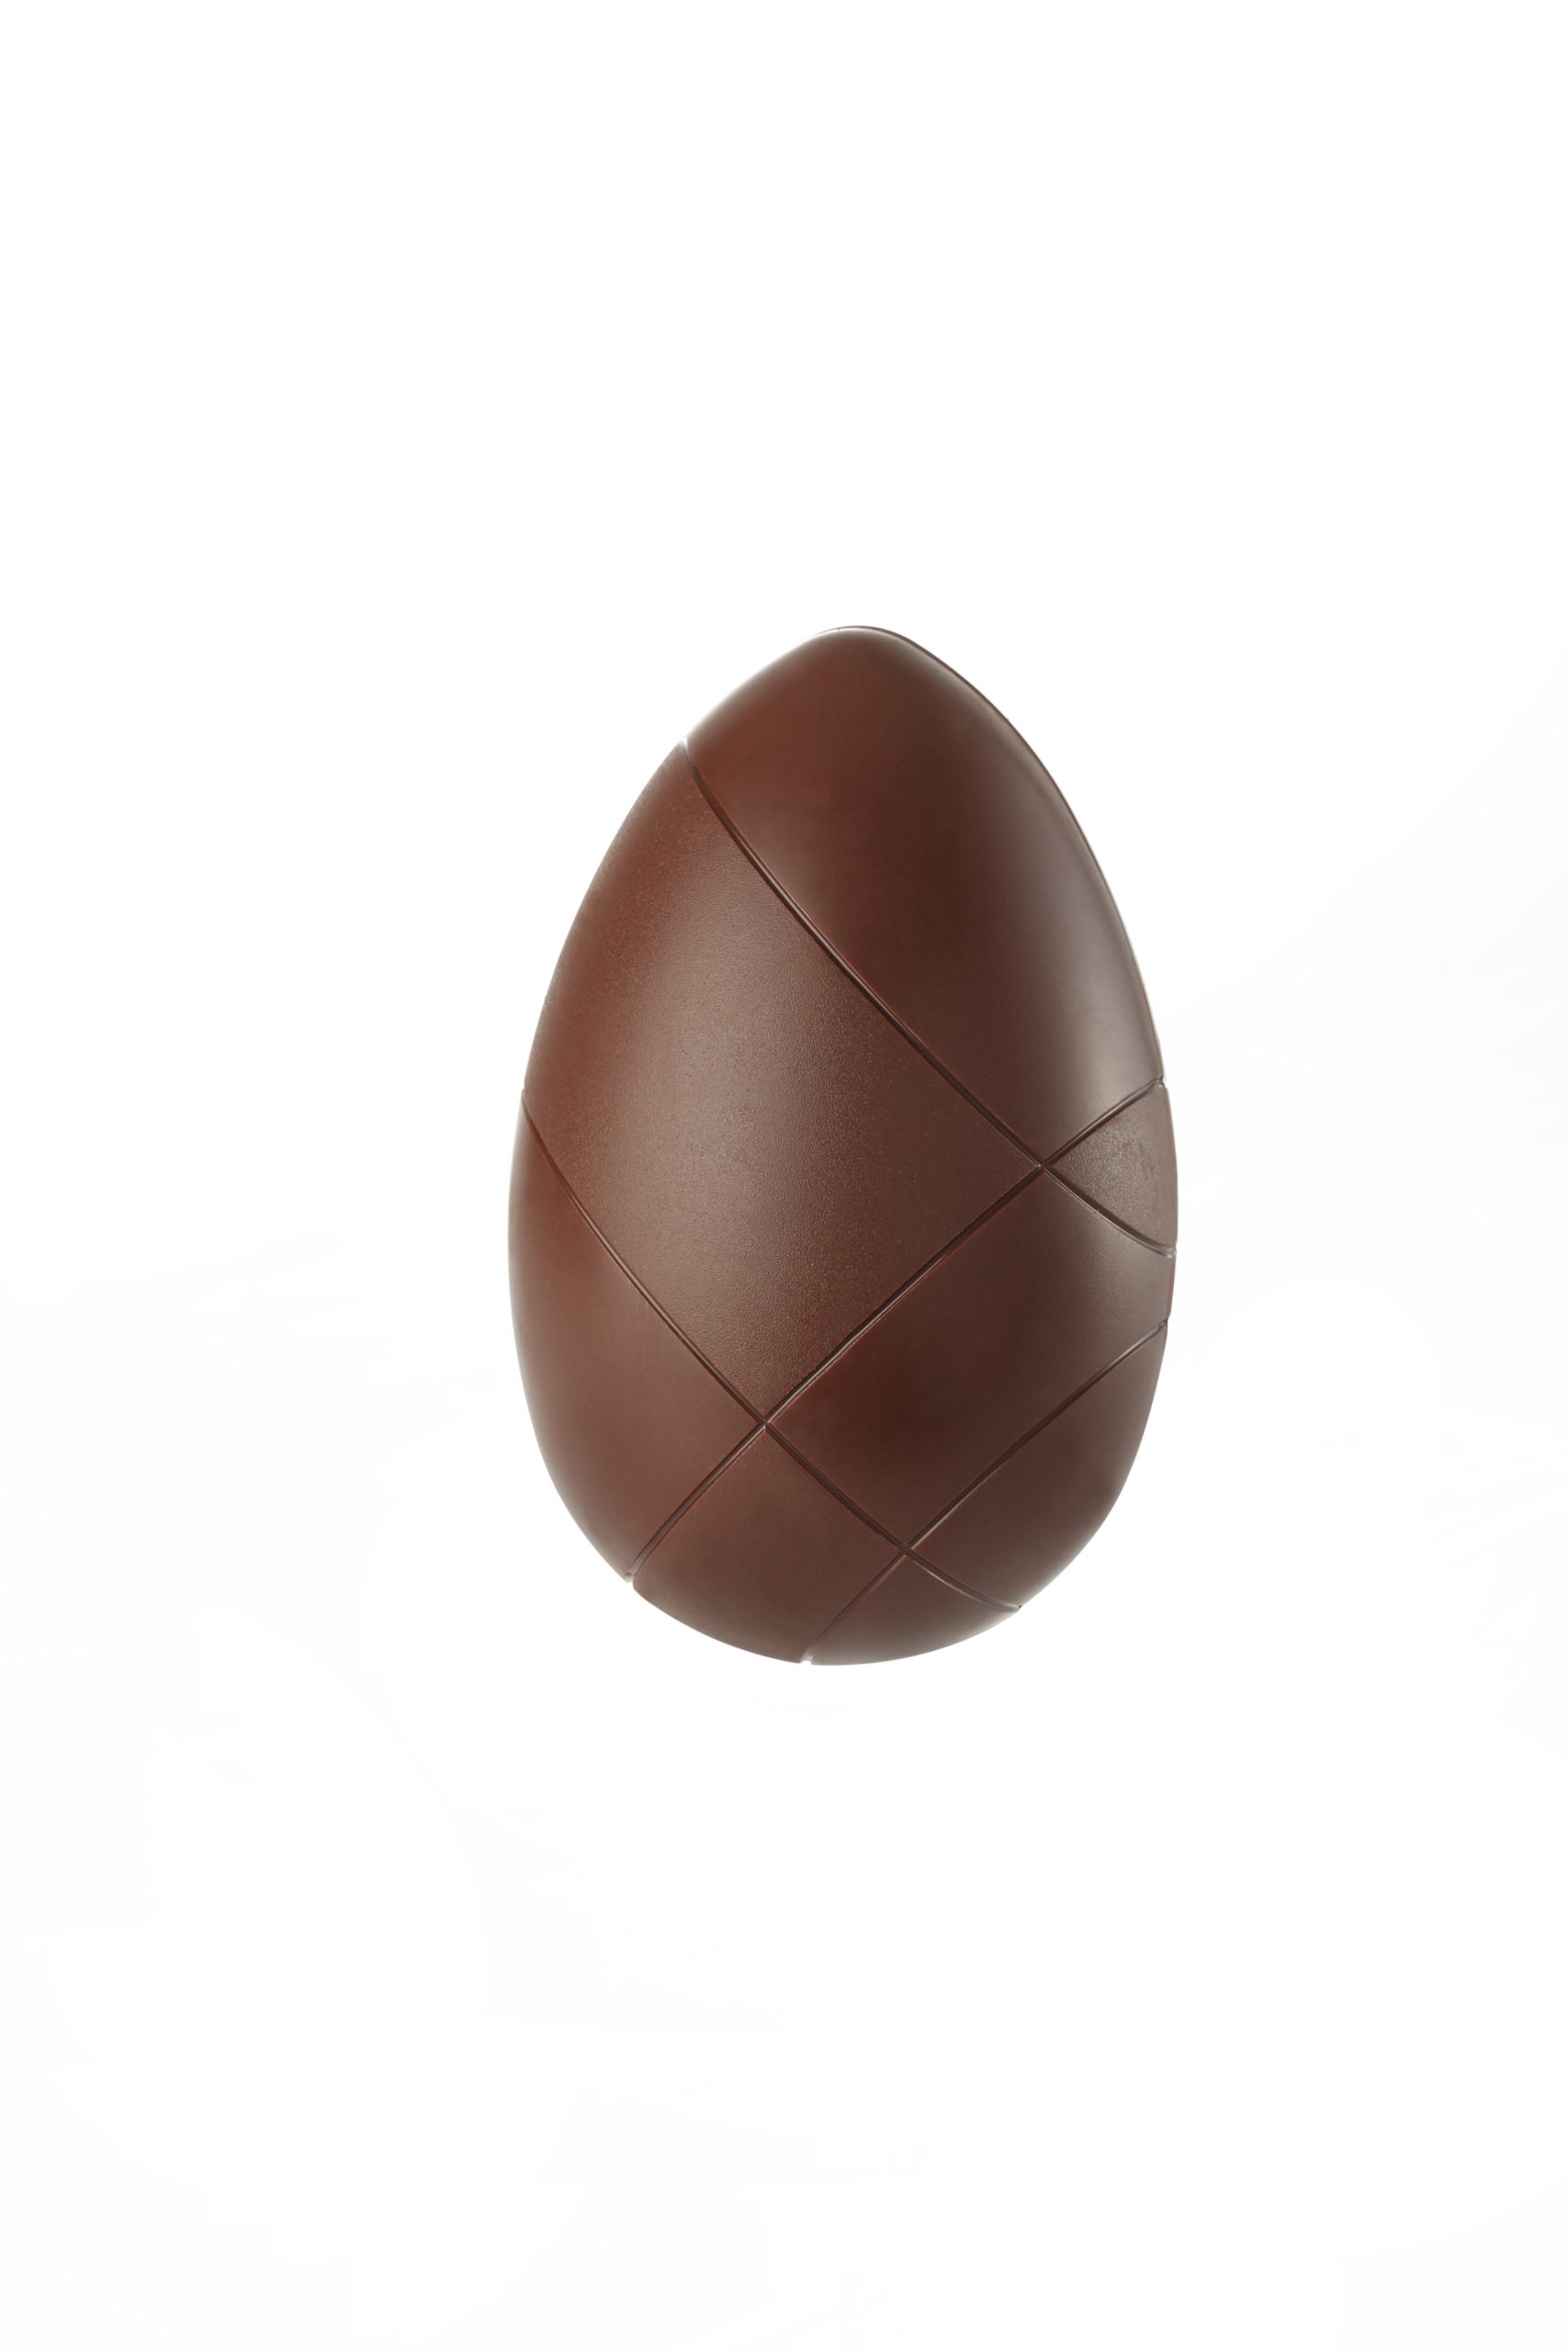 Cacao Collective Egg 16cm